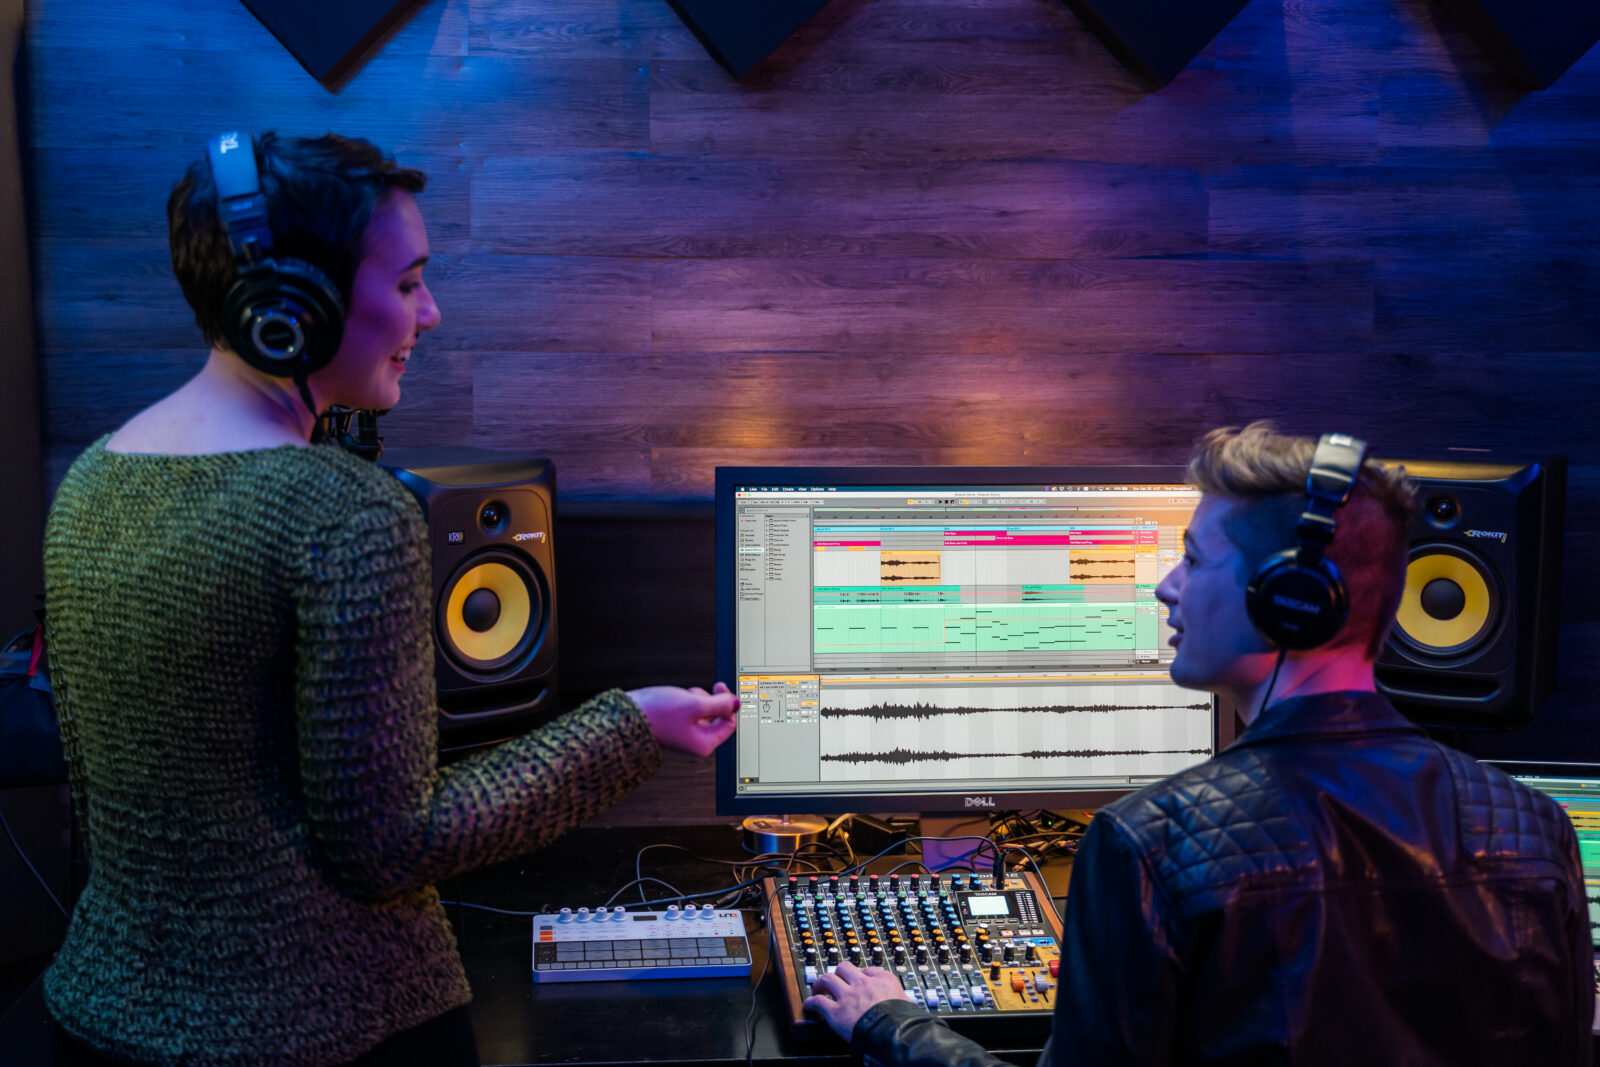 Deux personnes dans un studio d’enregistrement, avec un casque, discutant ensemble. La personne de droite est assise en face d’un écran d’ordinateur sur laquelle apparaît une page de logiciel d’enregistrement multipiste. Sa main gauche est posée sur les faders d’une console de mixage Tascam Model 12. 